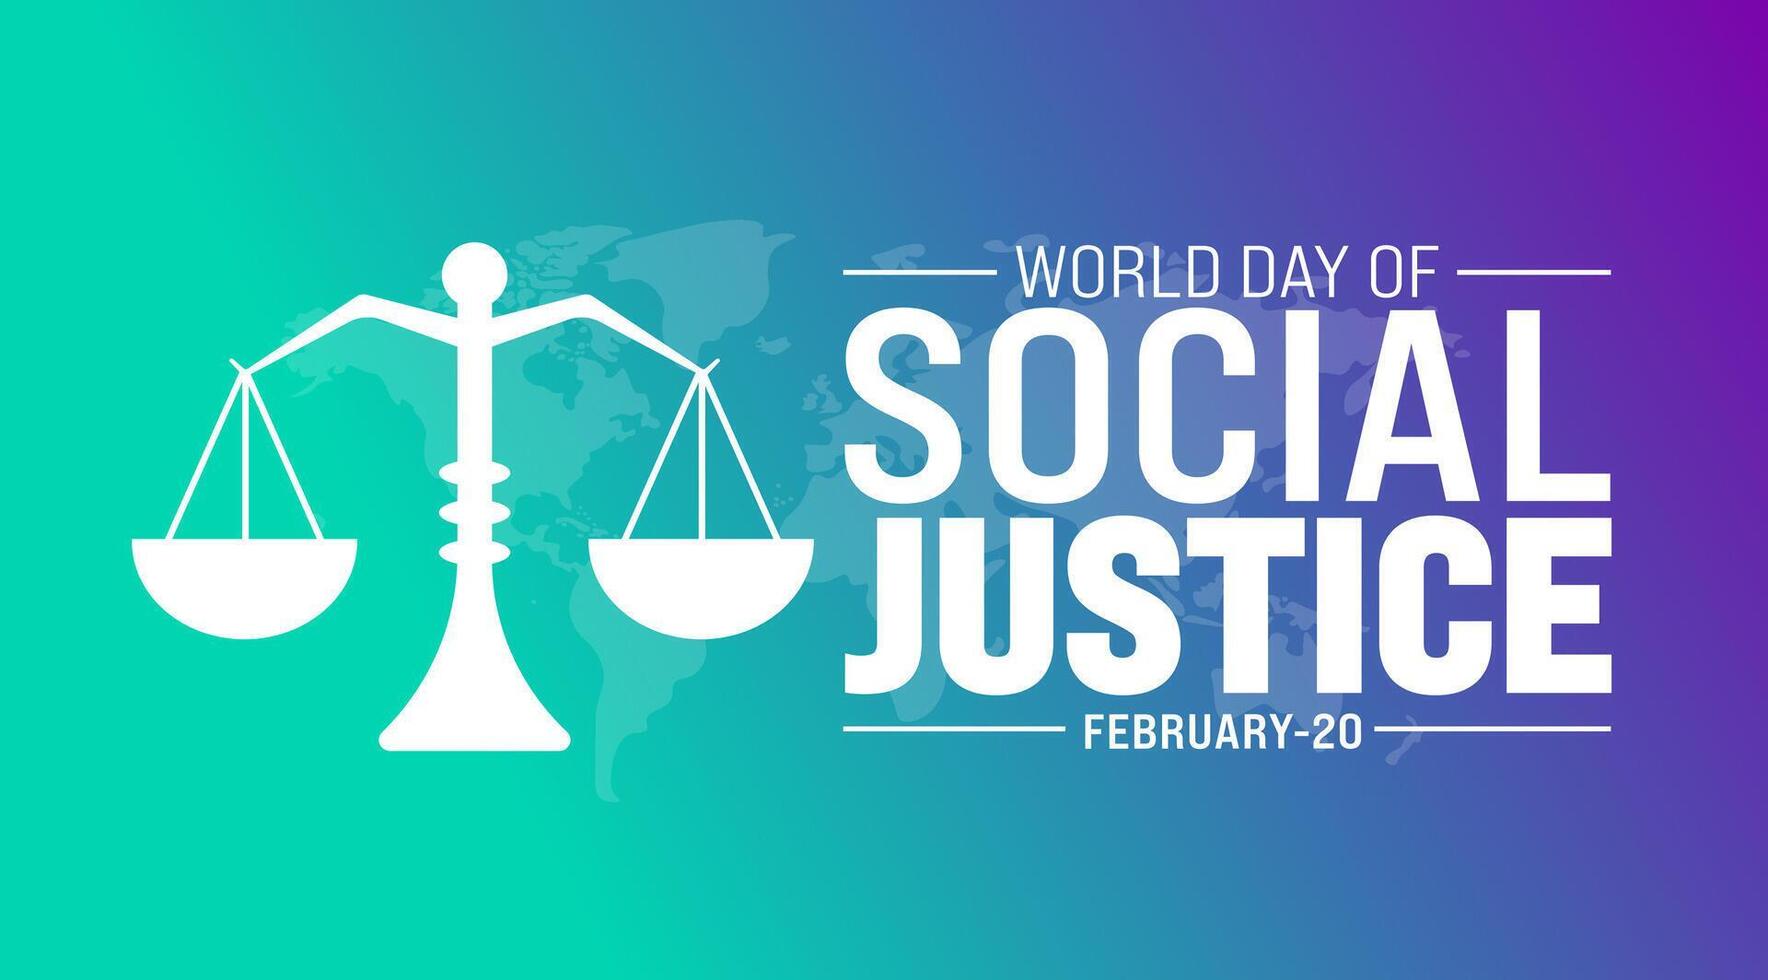 Februar ist Welt Tag von Sozial Gerechtigkeit Hintergrund Vorlage. Urlaub Konzept. Hintergrund, Banner, Plakat, Karte, und Poster Design Vorlage mit Text Inschrift und Standard Farbe. Vektor